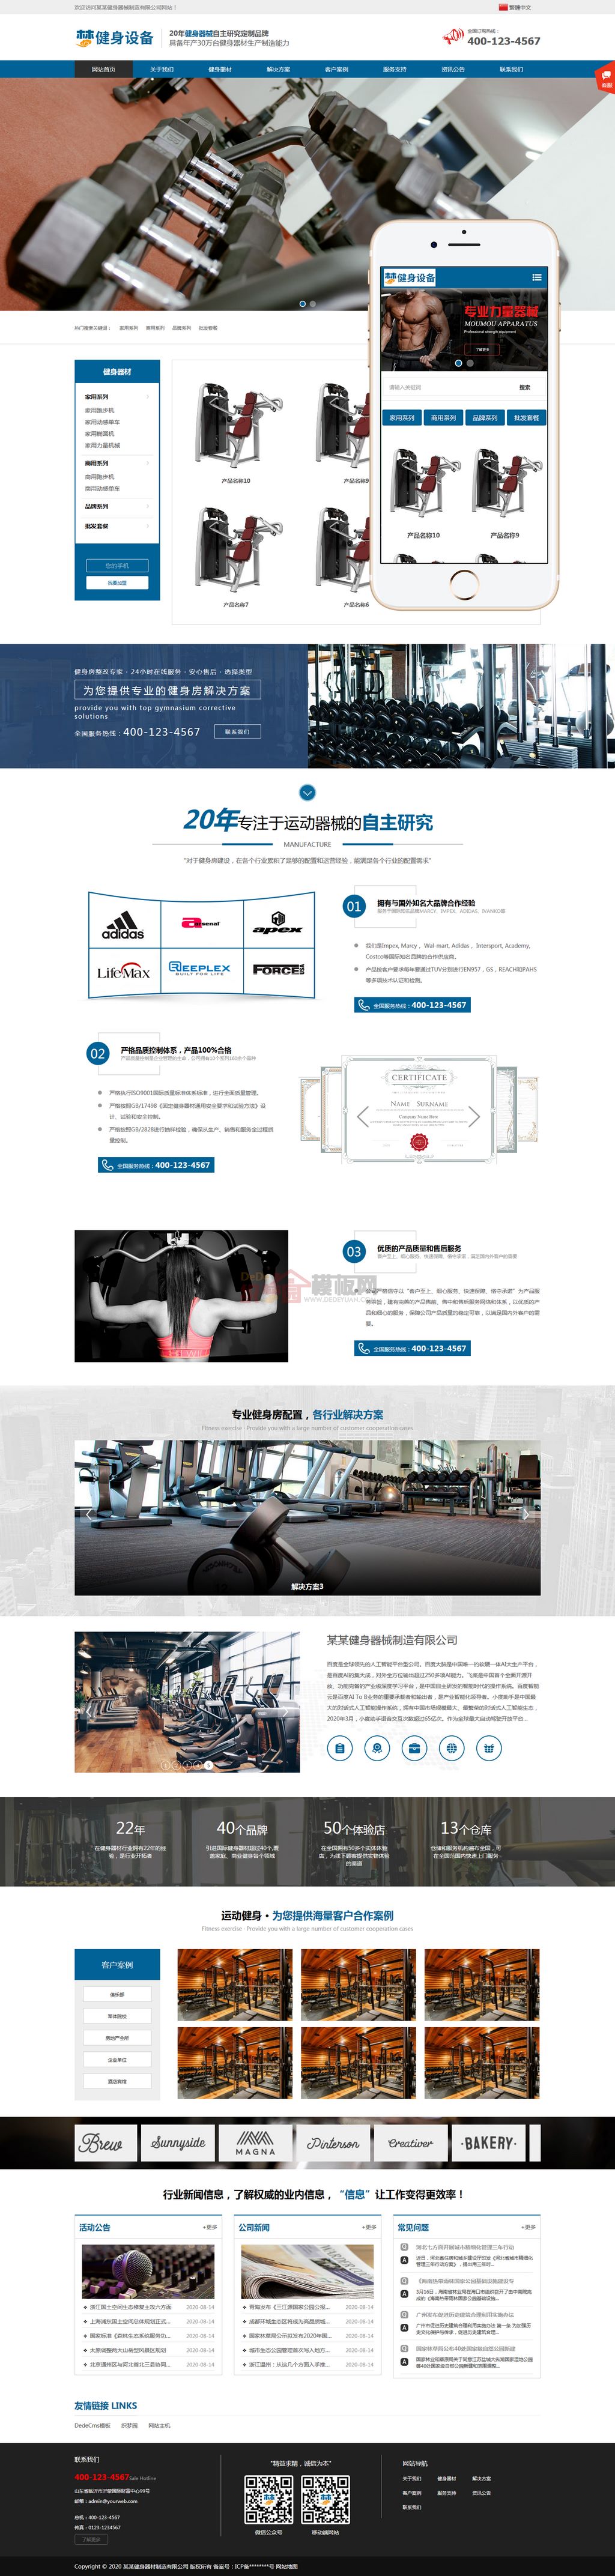 简繁双语营销型运动健身器械生产类网站WordPress主题模板演示图